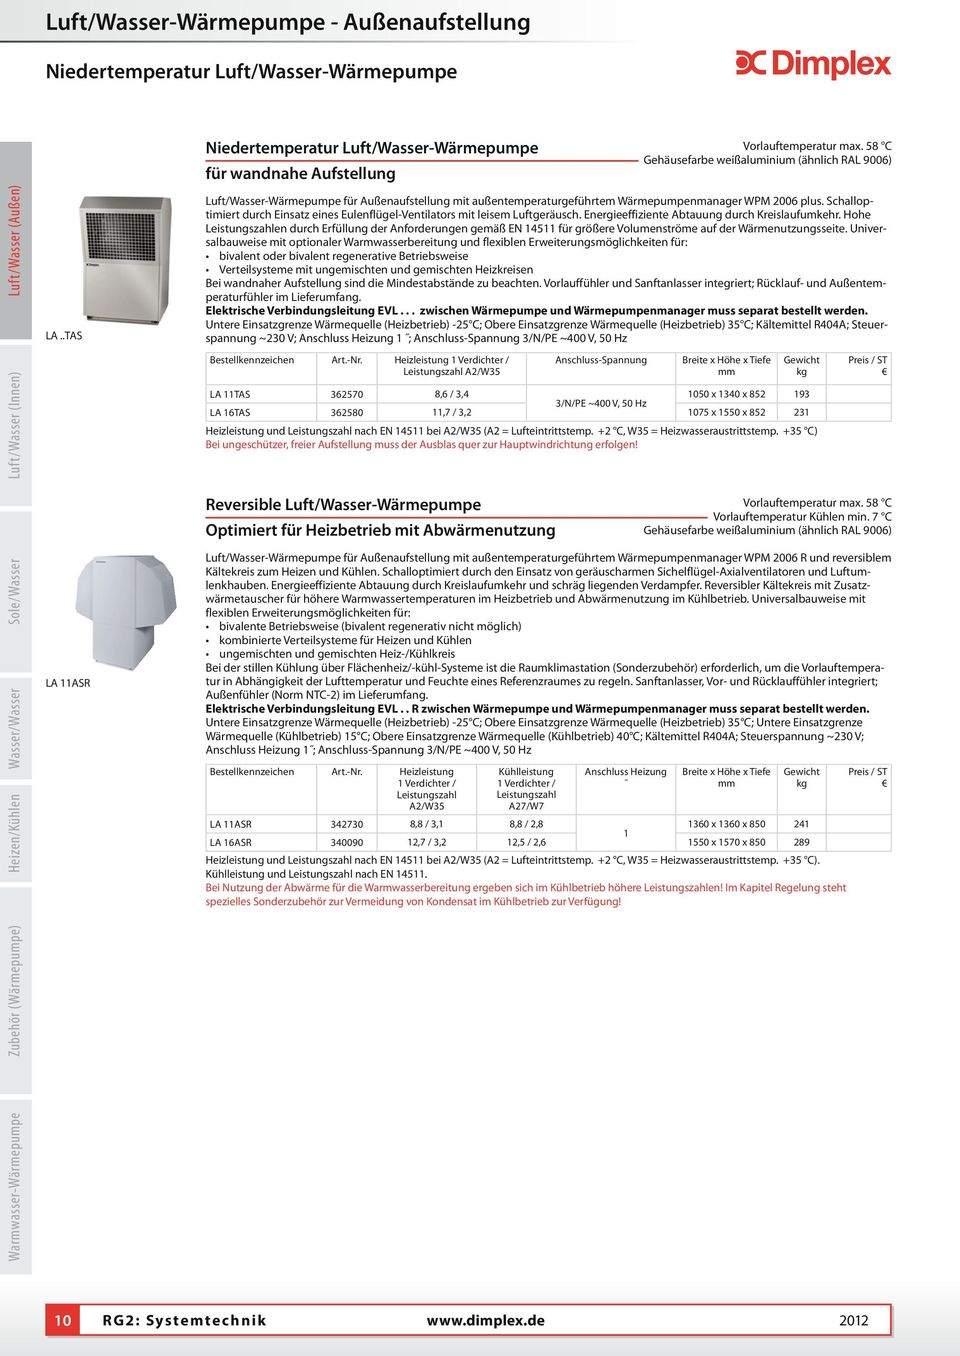 58 C Gehäusefarbe weißaluminium (ähnlich RAL 9006) Luft/asser-ärmepumpe für Außenaufstellung mit außentemperaturgeführtem ärmepumpenmanager PM 2006 plus.